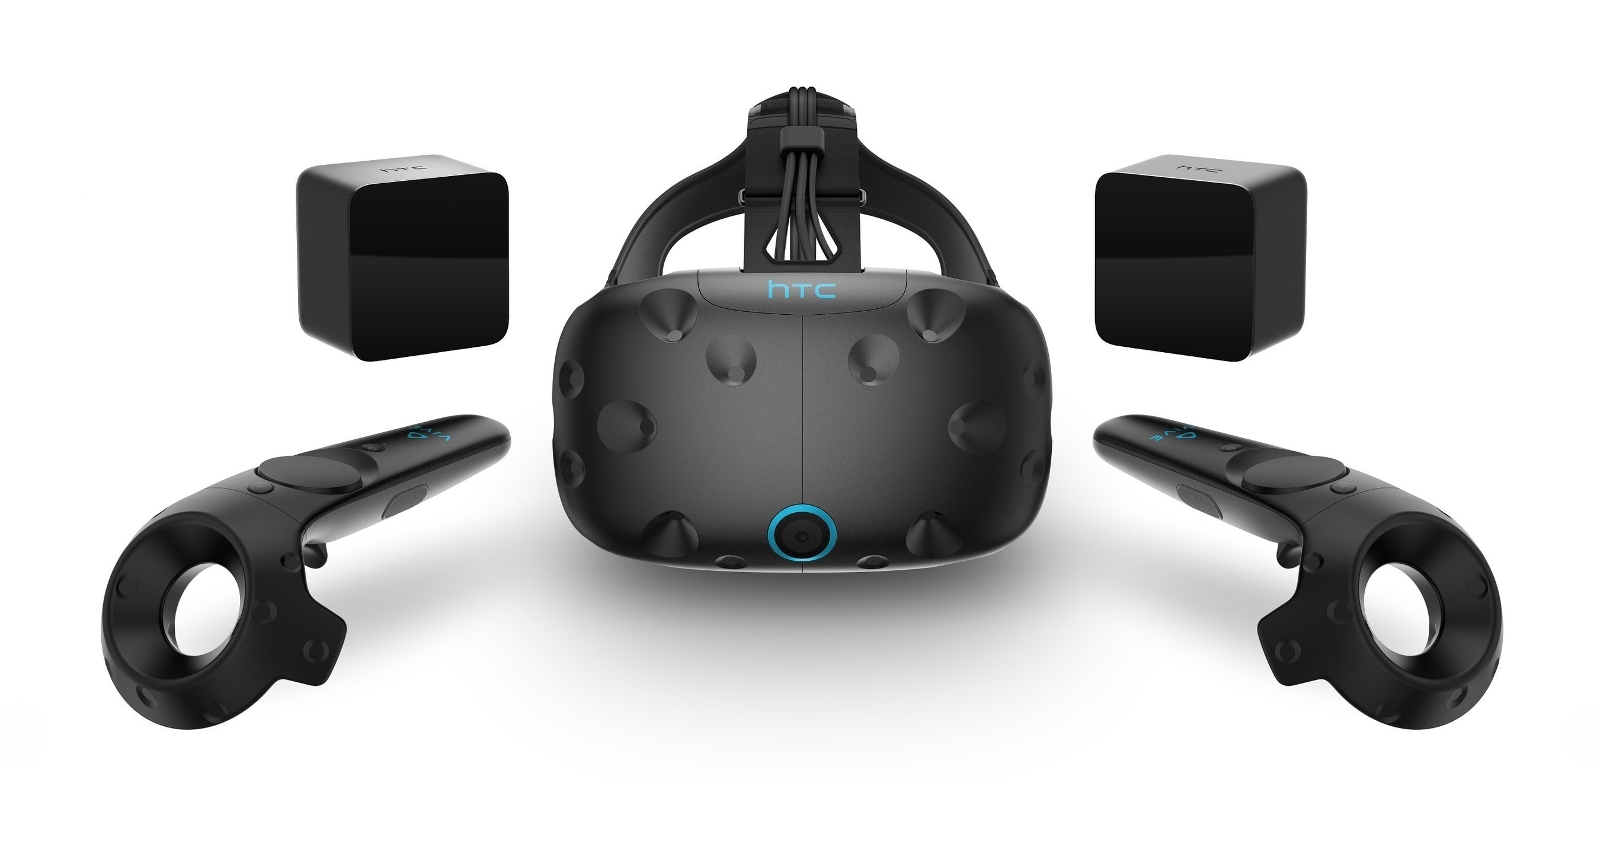 HTC senkt Preise fuer VR-System Vive - Bild 1